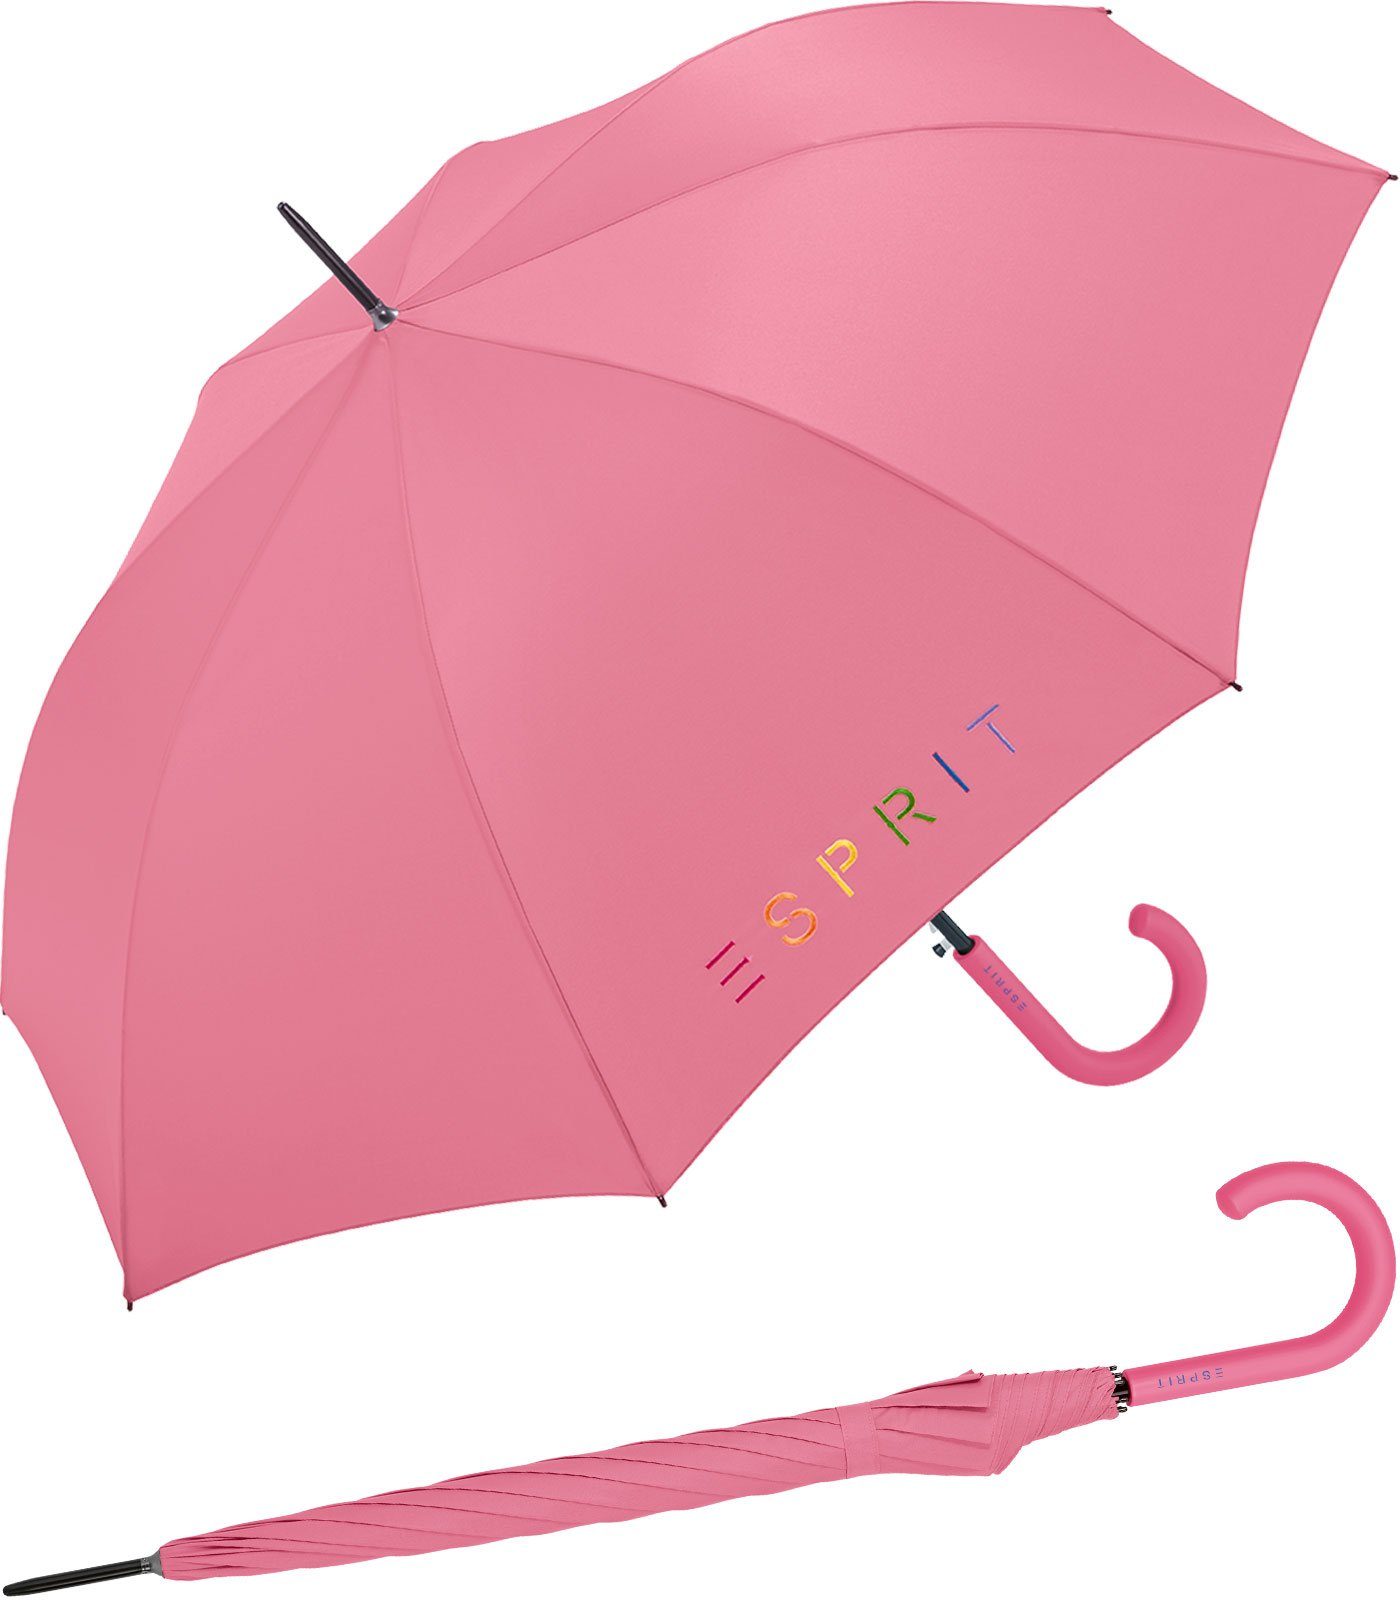 Esprit Langregenschirm Damen-Regenschirm Colorful Logo, bunt bedruckt mit Esprit-Schriftzug rosa